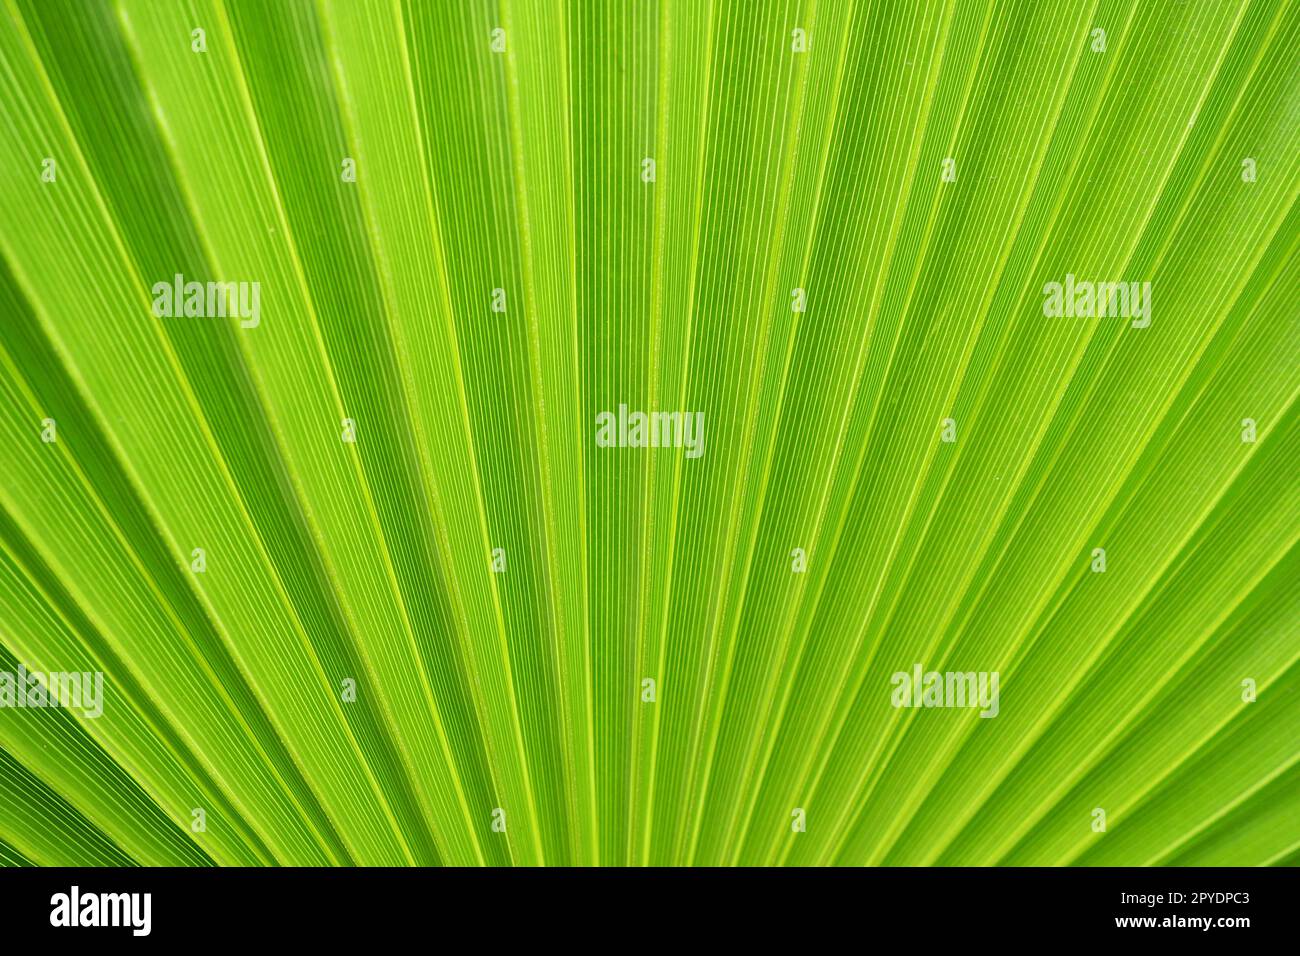 La trama delle foglie di palma è caratterizzata da ombre e luci. Foglie di palma di colore verde e giallo chiaro. Splendido sfondo tropicale. Turismo balneare estivo. Foglie pieghettate. Foto Stock